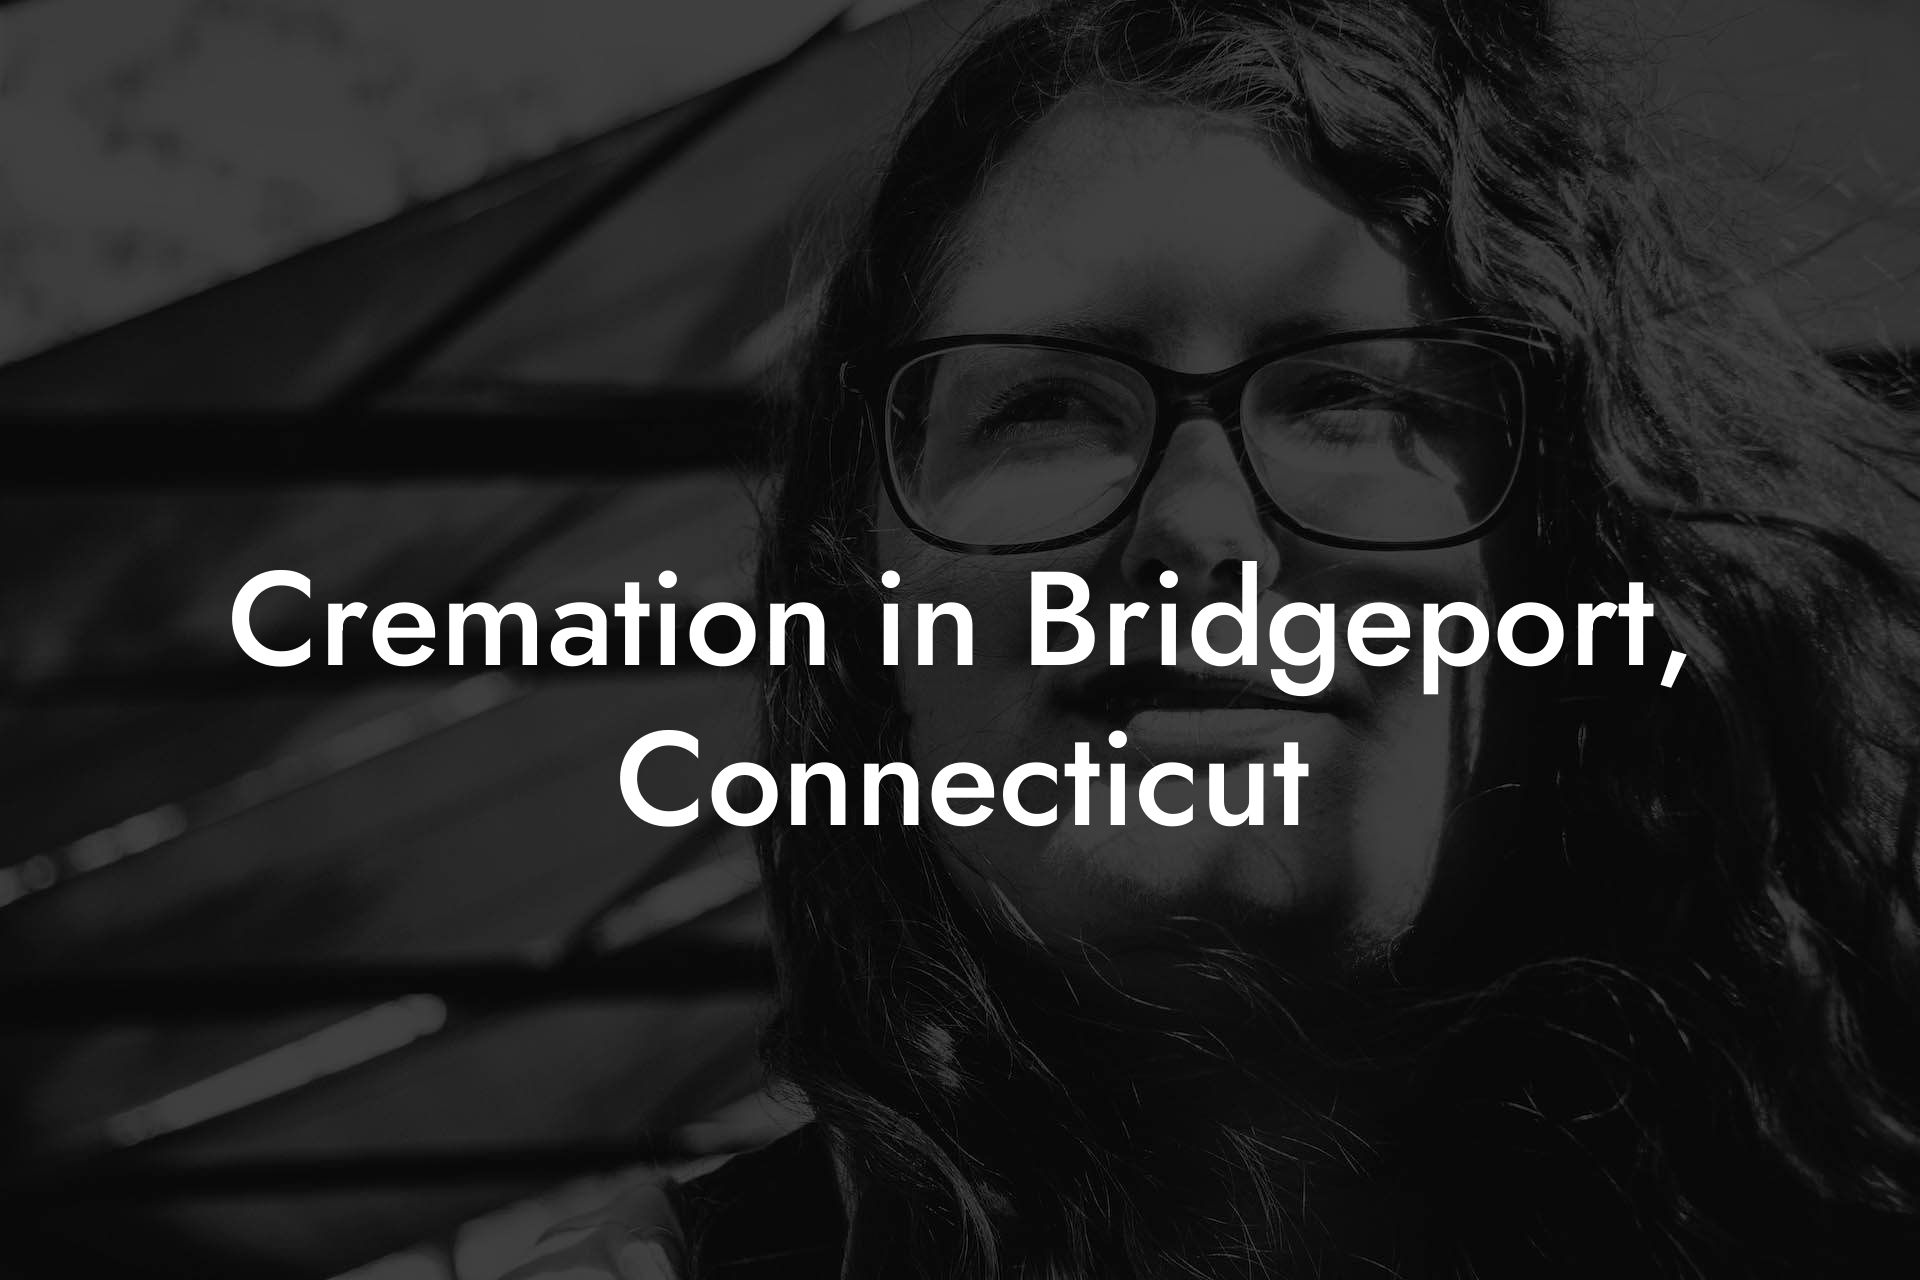 Cremation in Bridgeport, Connecticut